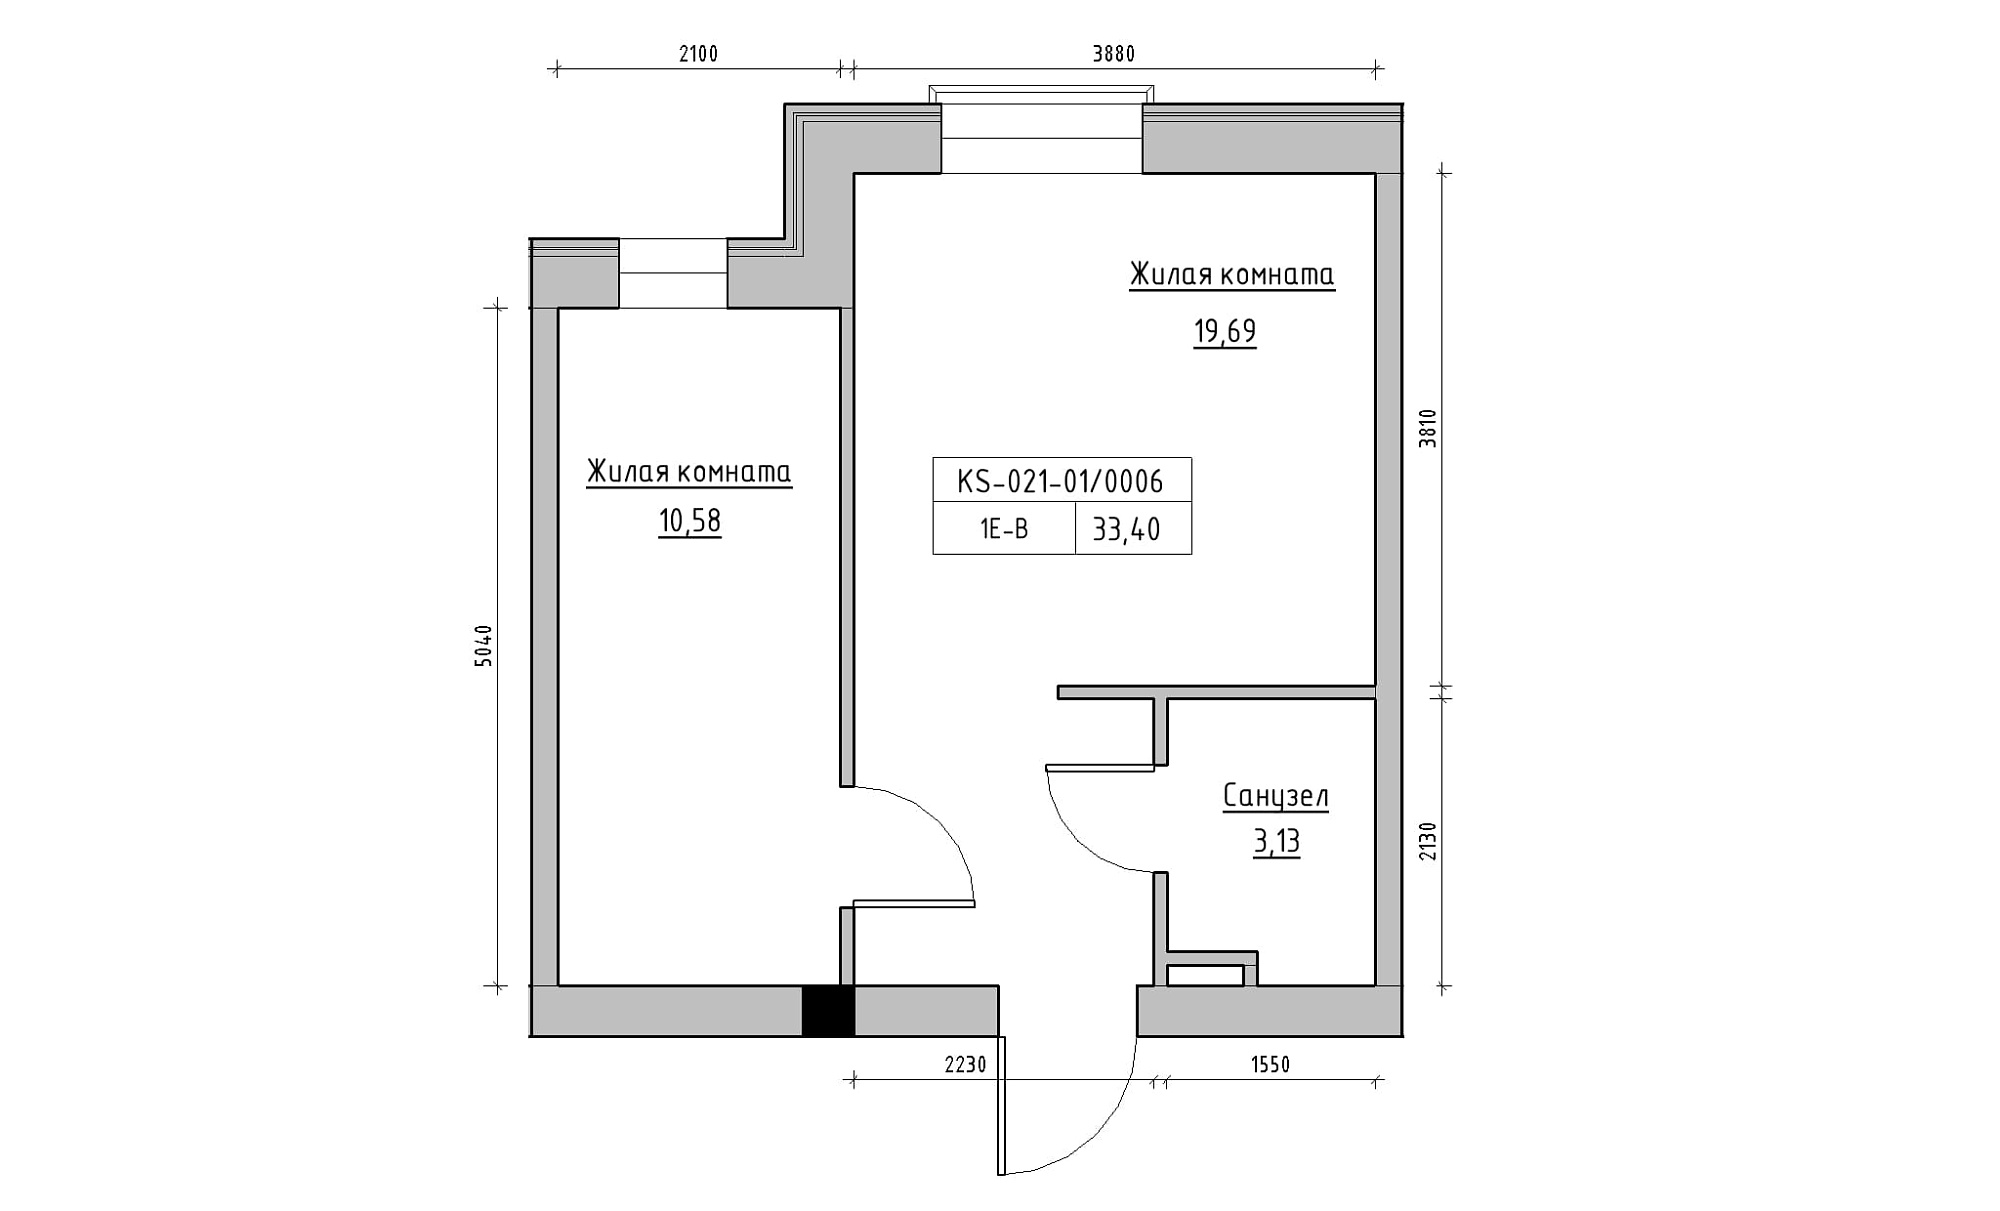 Планировка 1-к квартира площей 33.4м2, KS-021-01/0006.